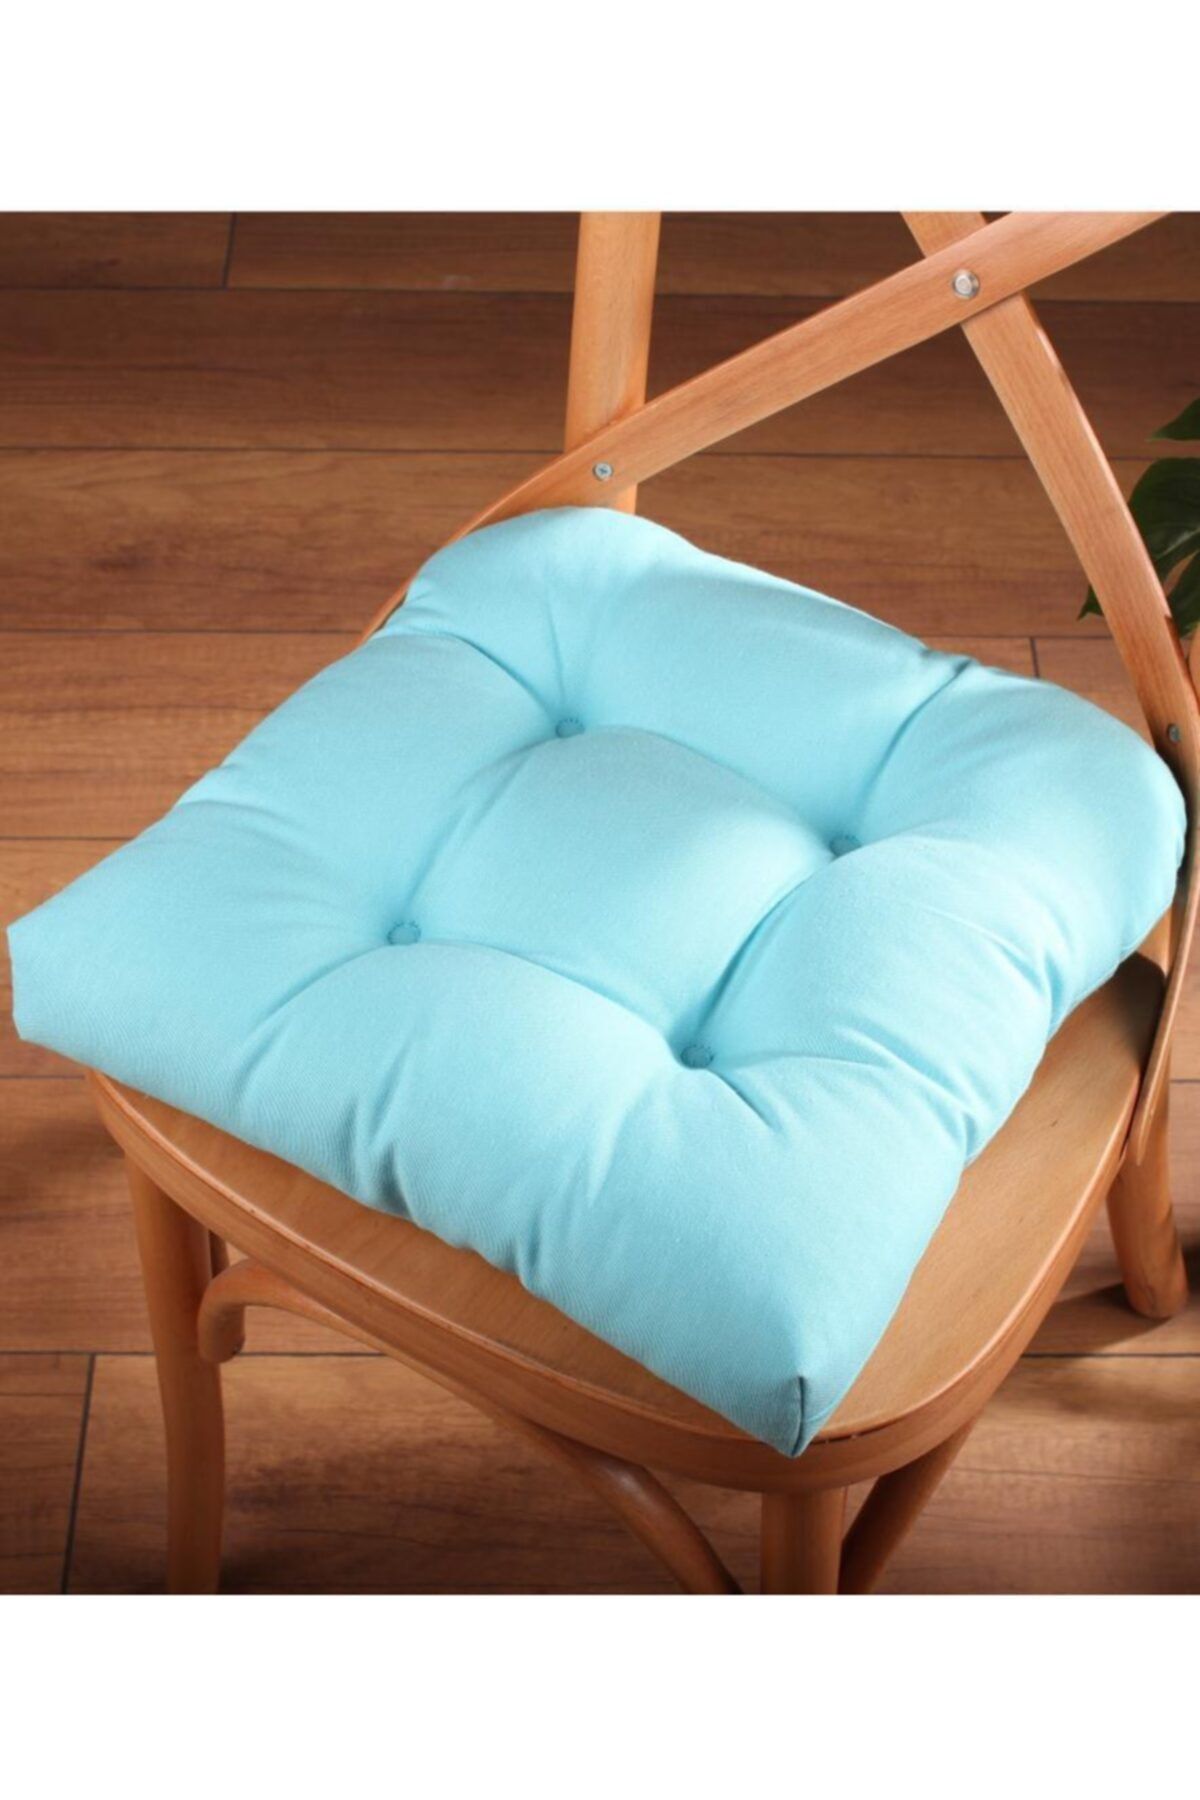 ALTINPAMUK Gold Pofidik Turkuaz Sandalye Minderi Özel Dikişli Bağcıklı 40x40cm